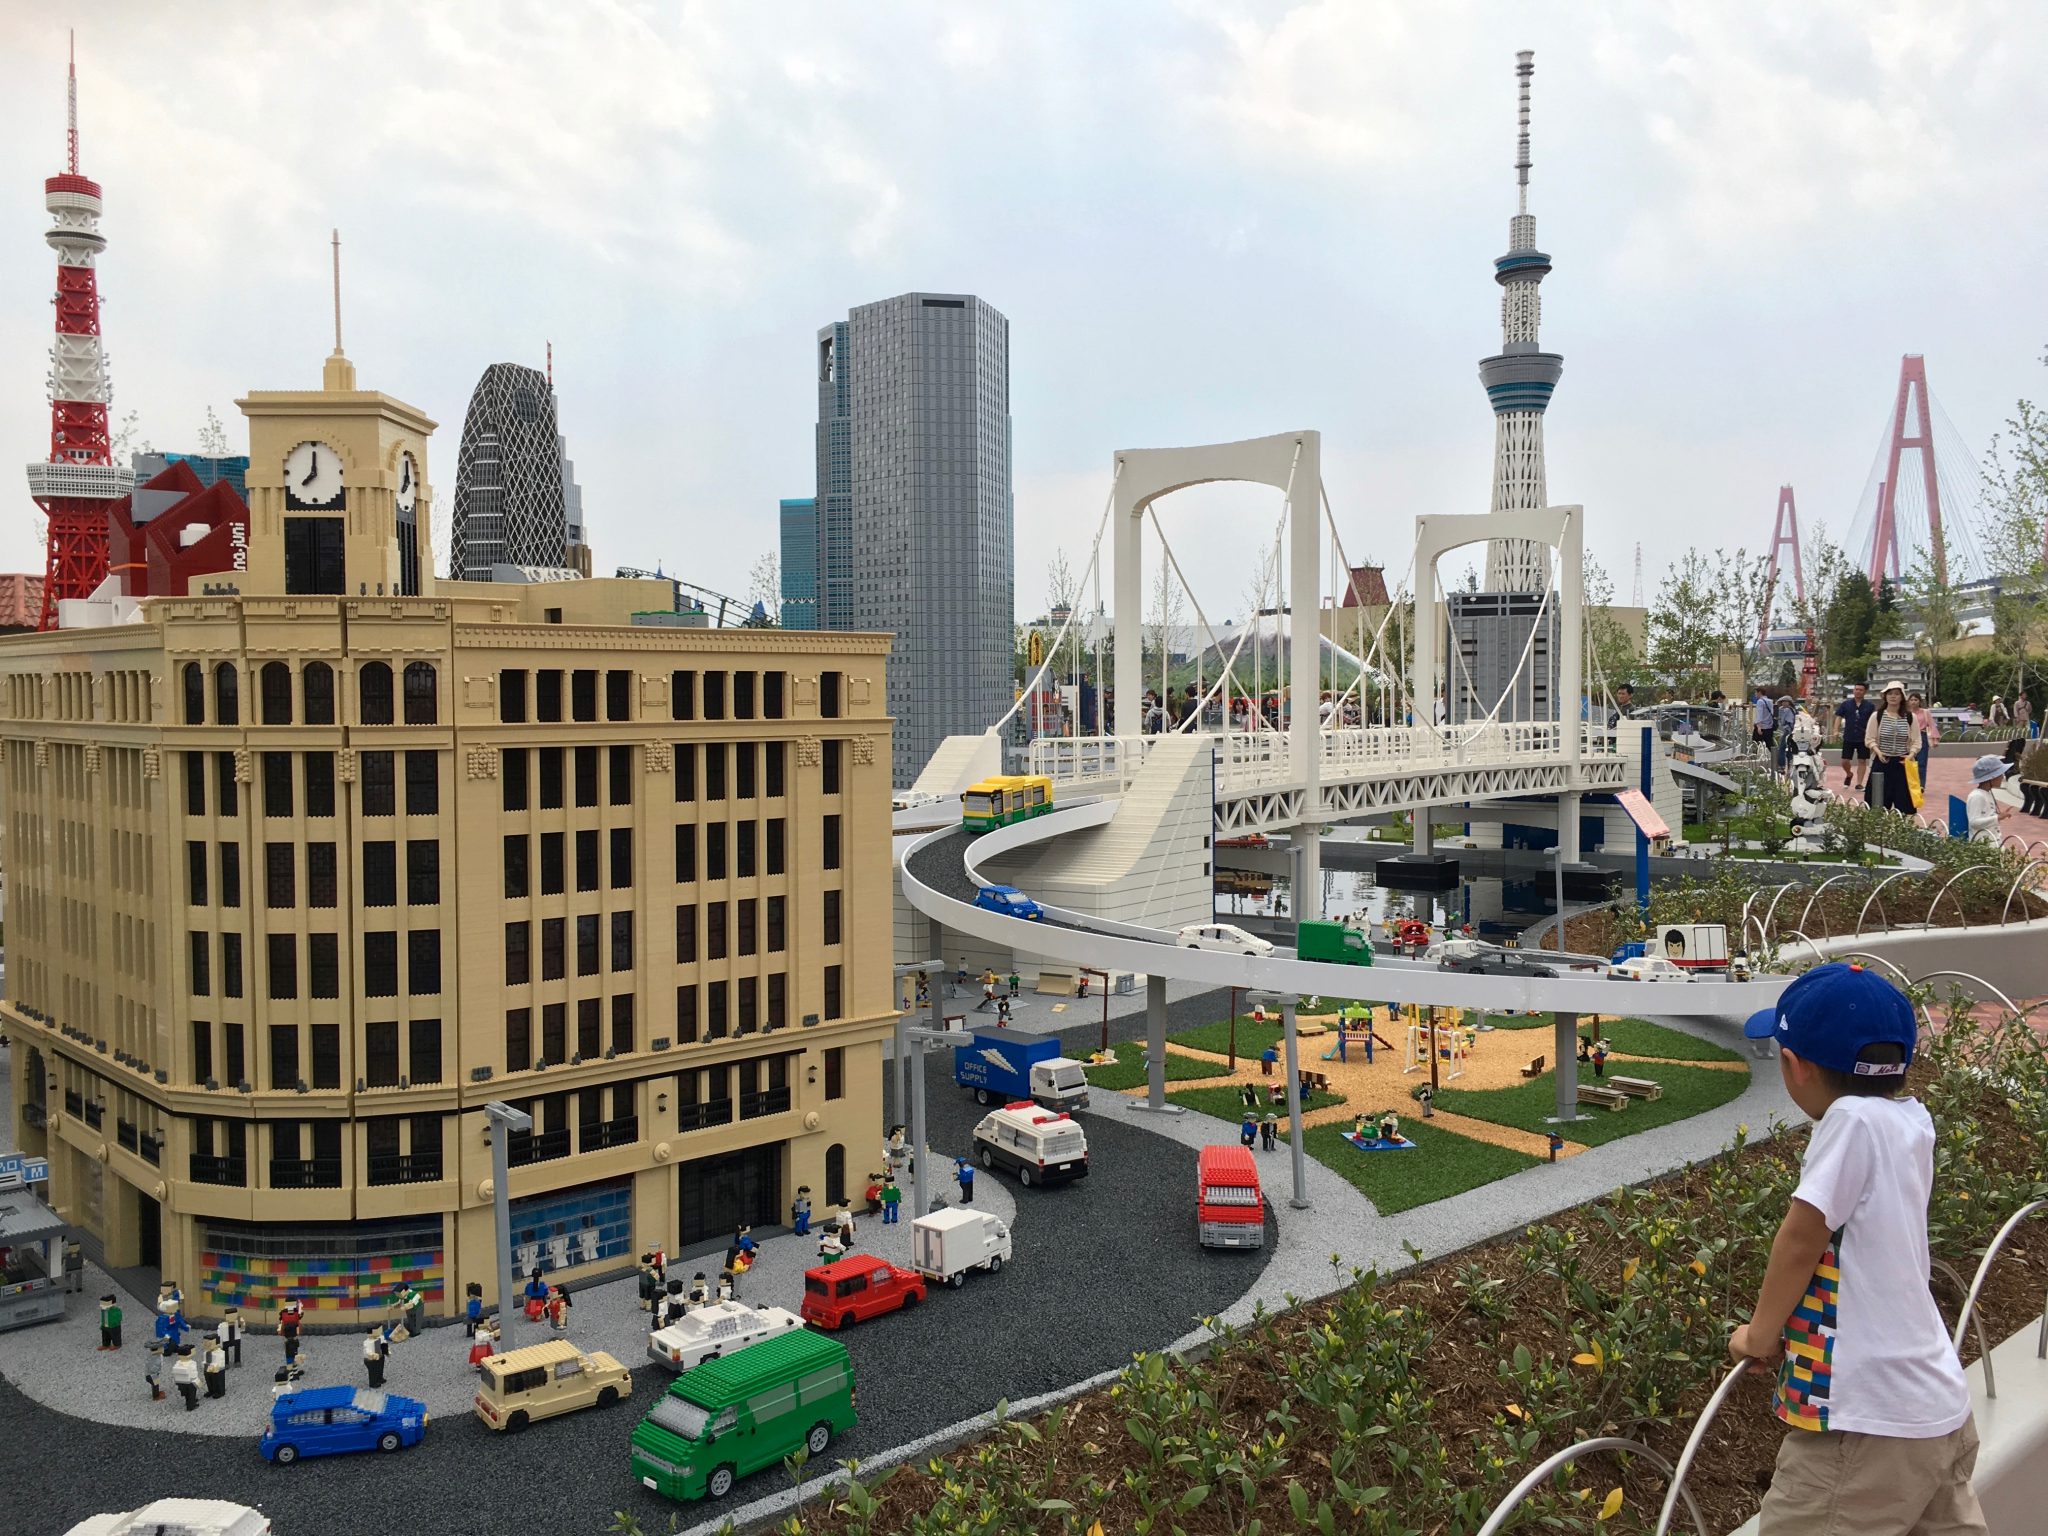 Legoland Japan Theme Park, Nagoya - Best Living Japan